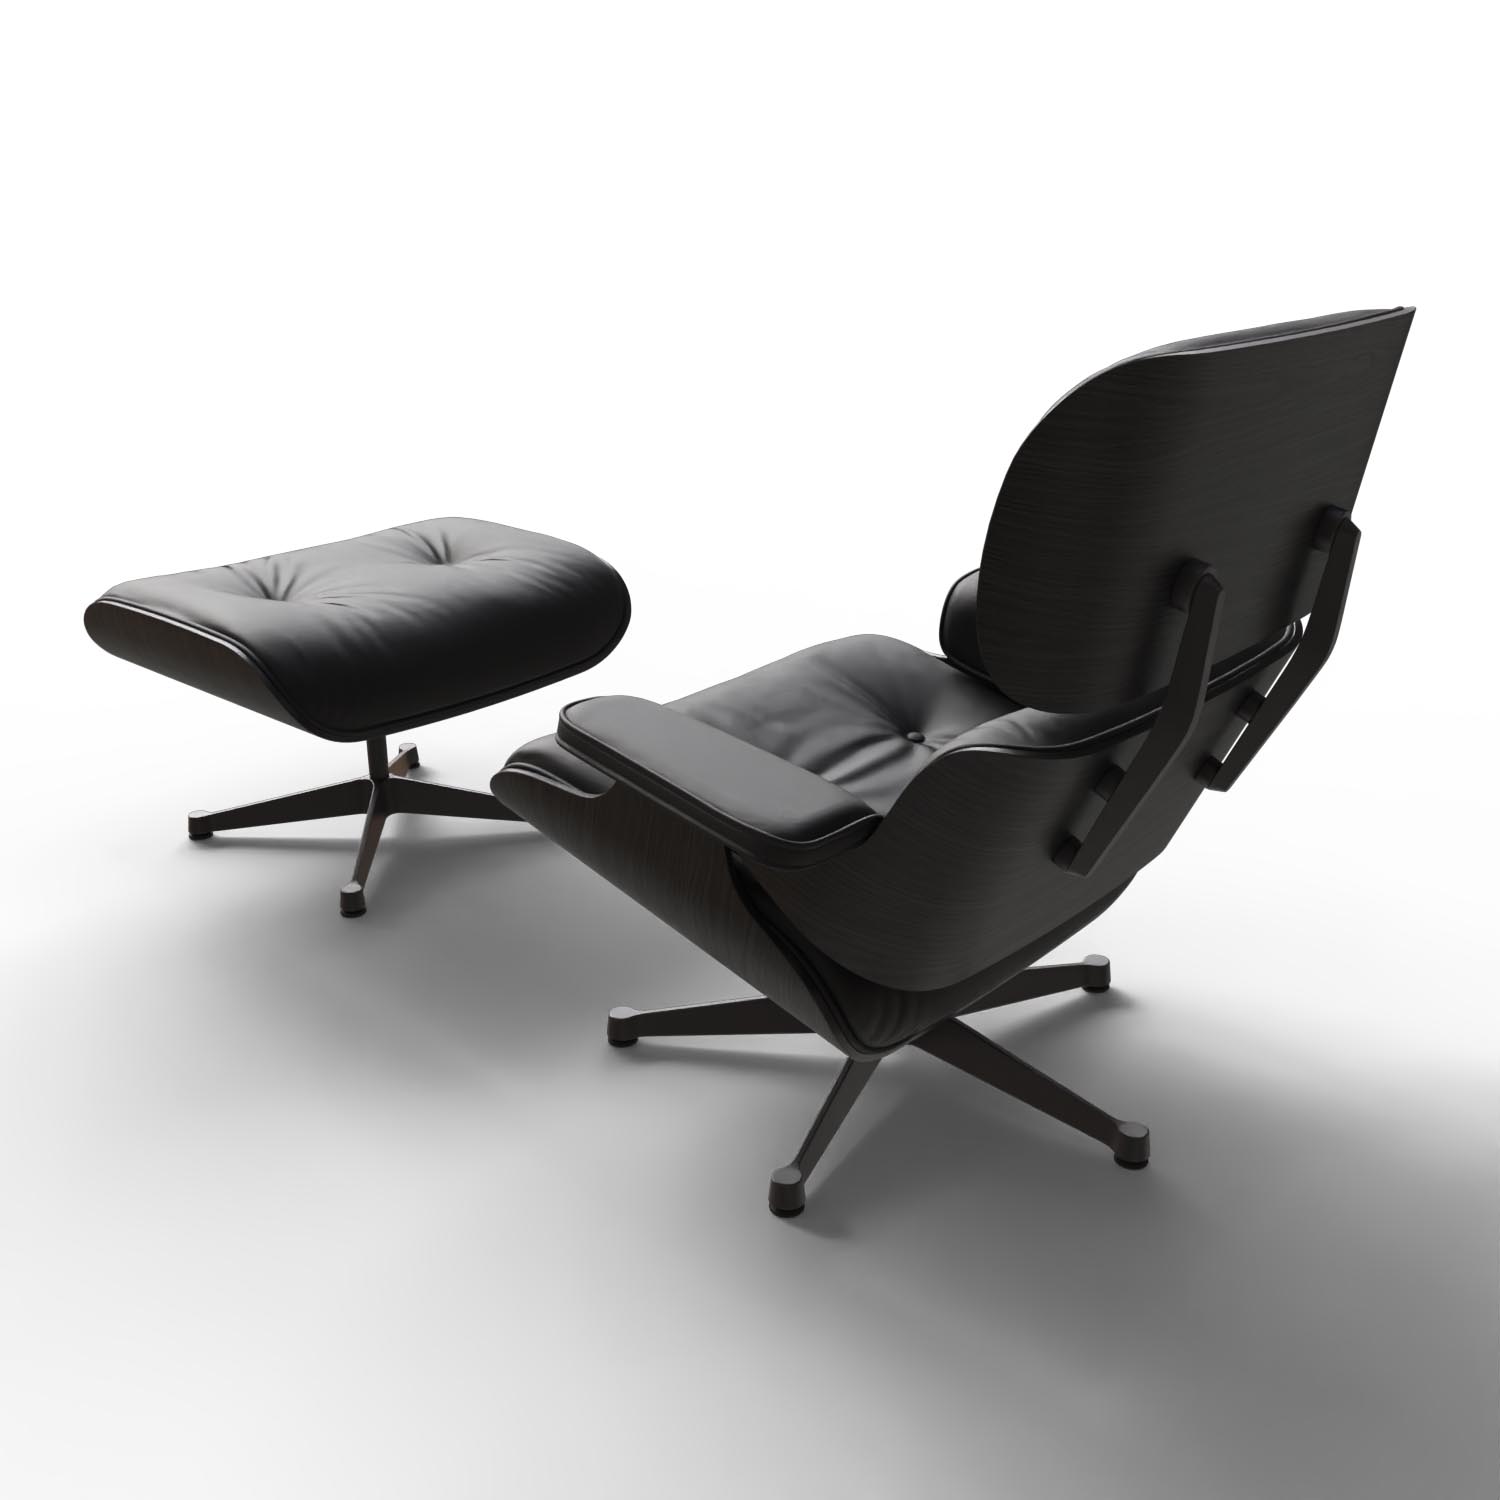 Lounge Chair und Ottoman 41211900 Escheschale Leder in Asphalt